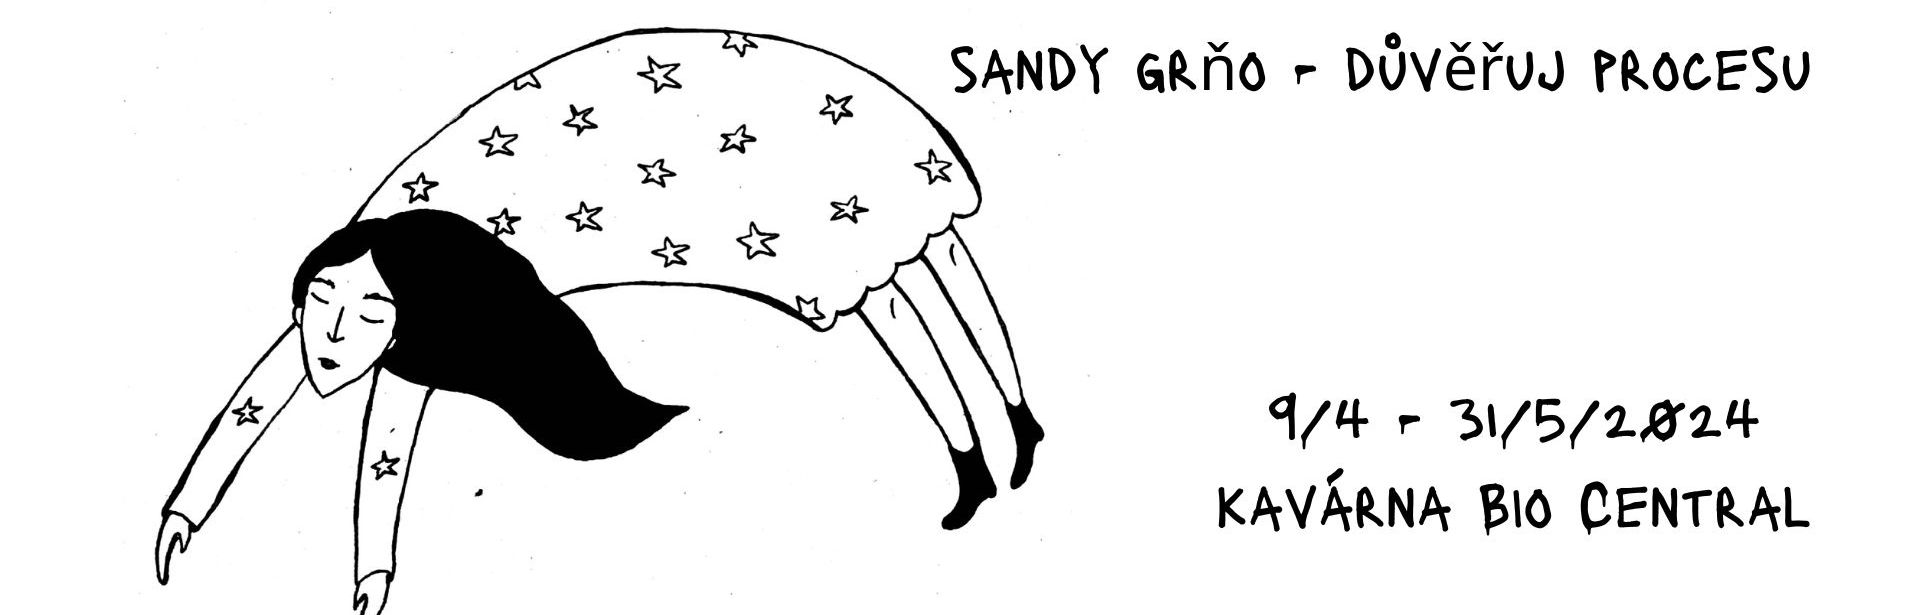 Sandy Grňo – trust the process